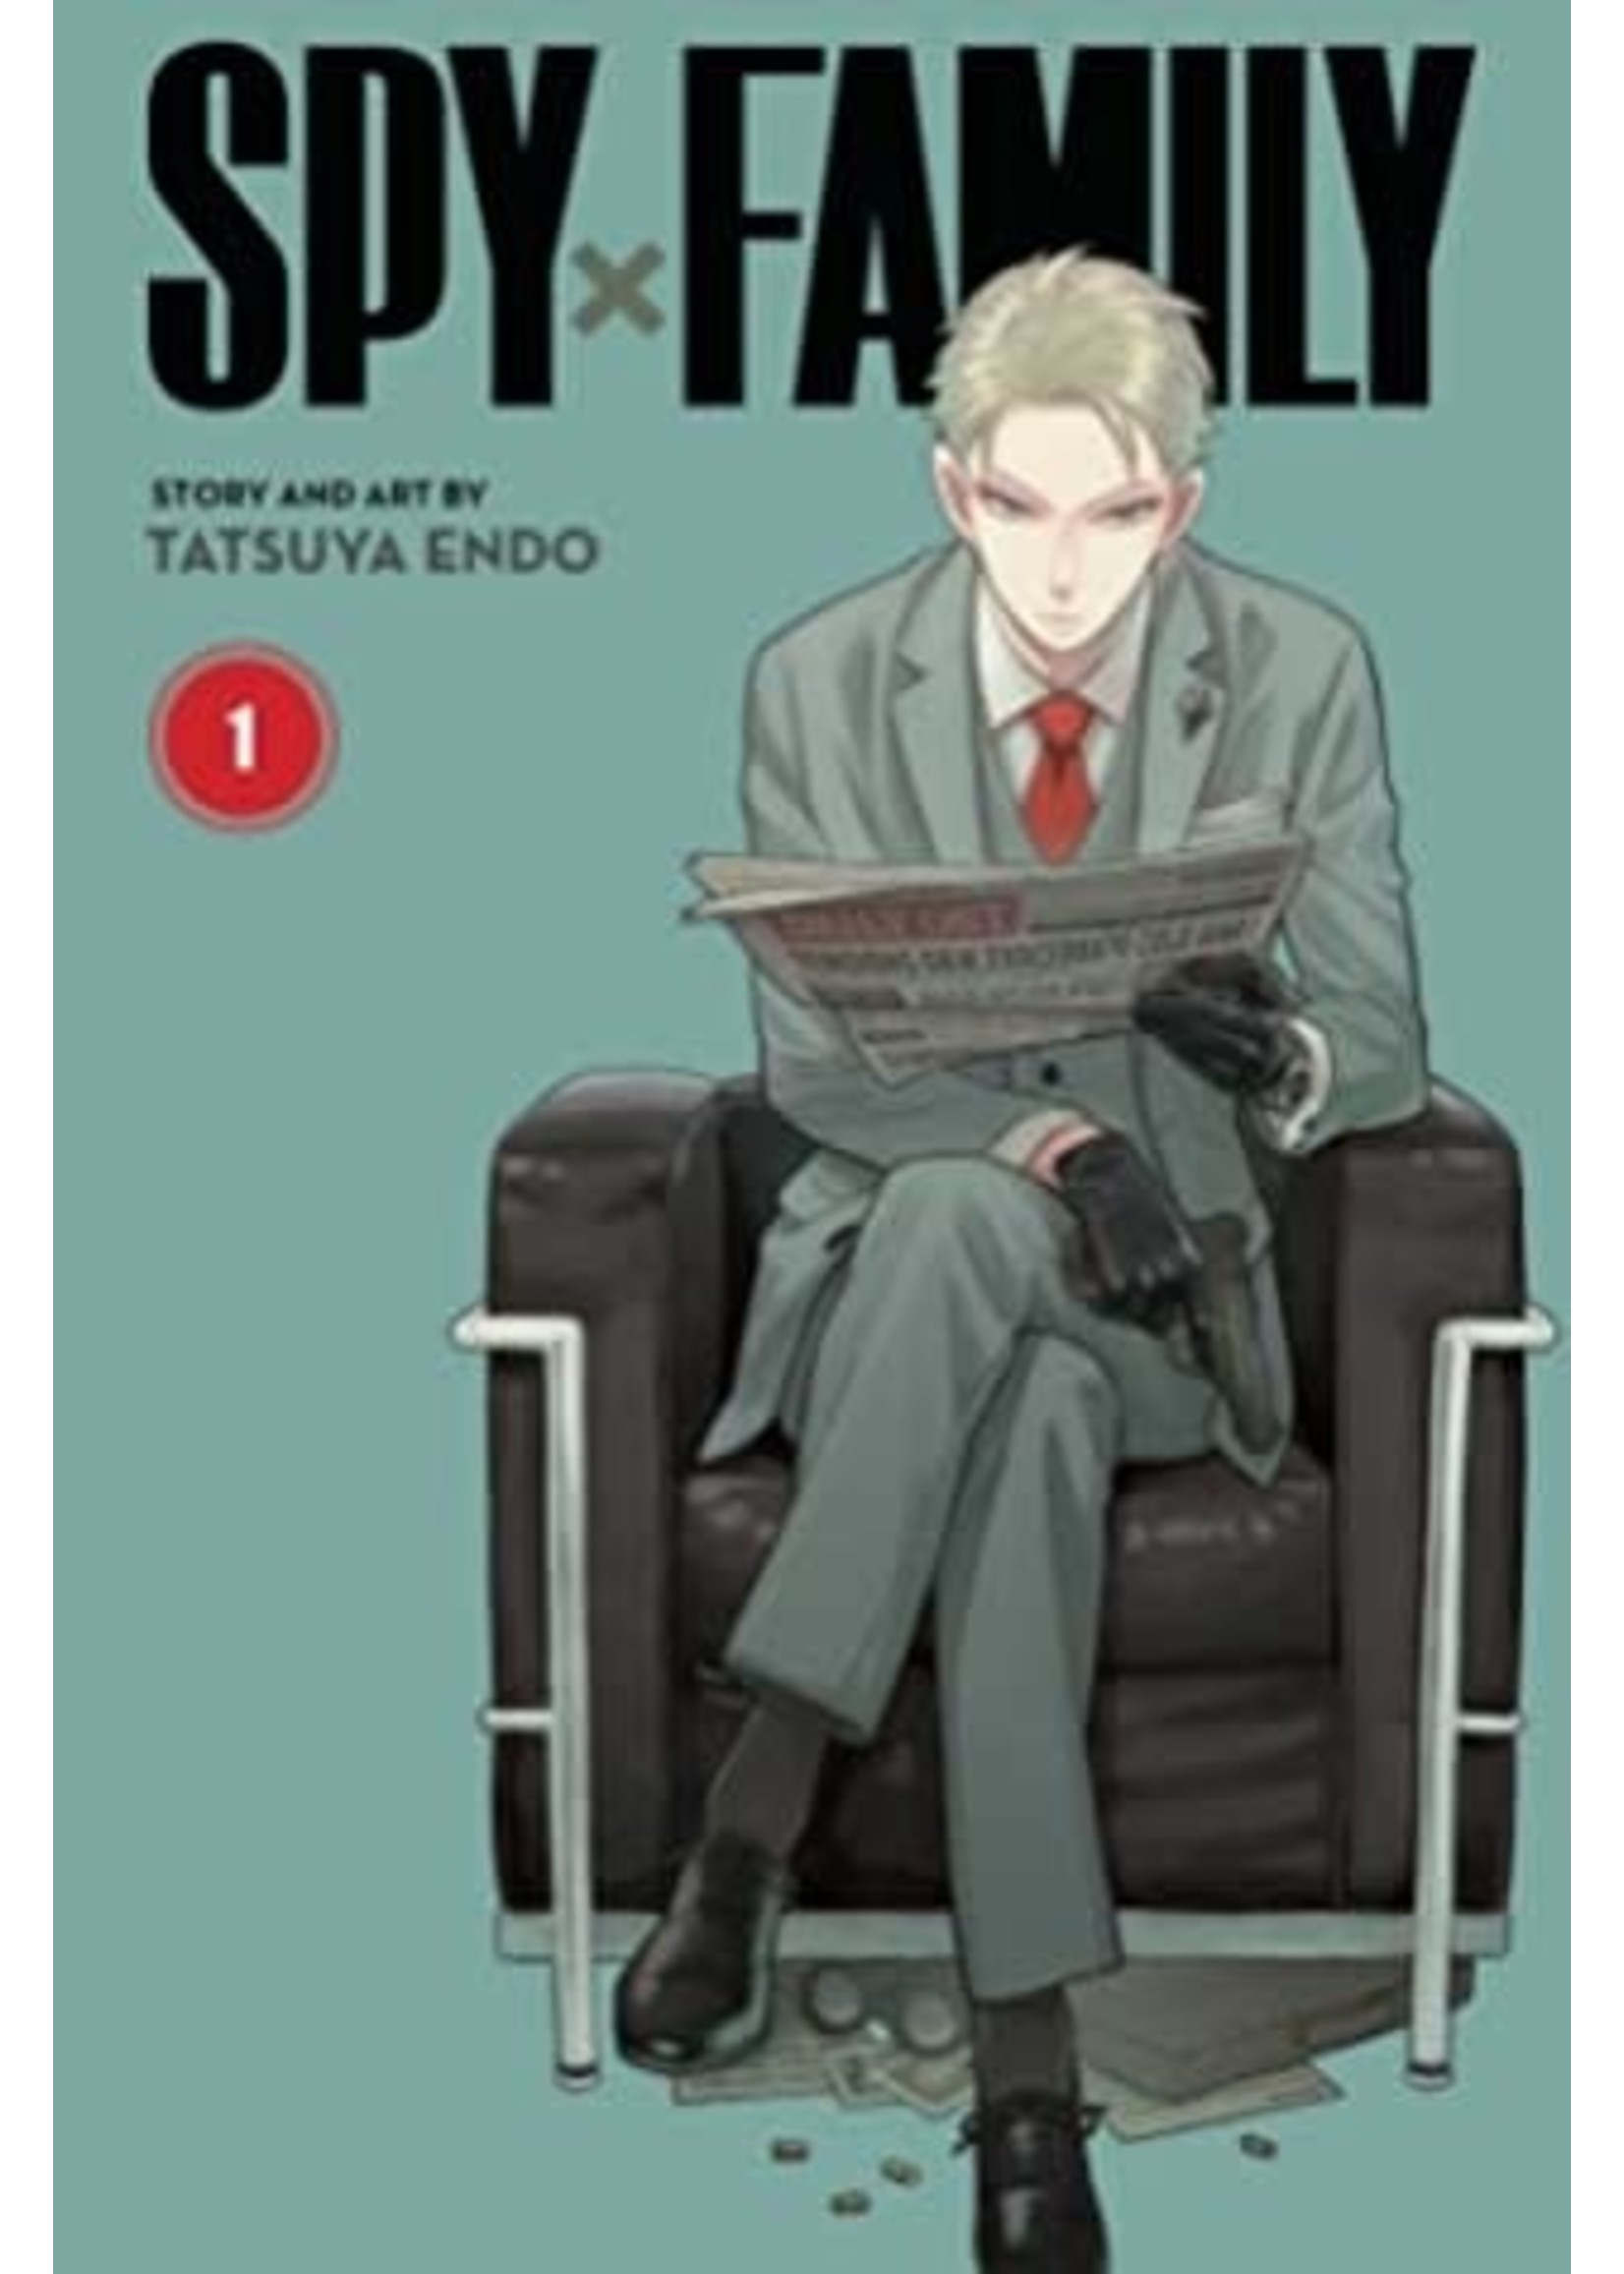 Spy x Family, Vol. 1 by Tatsuya Endo,